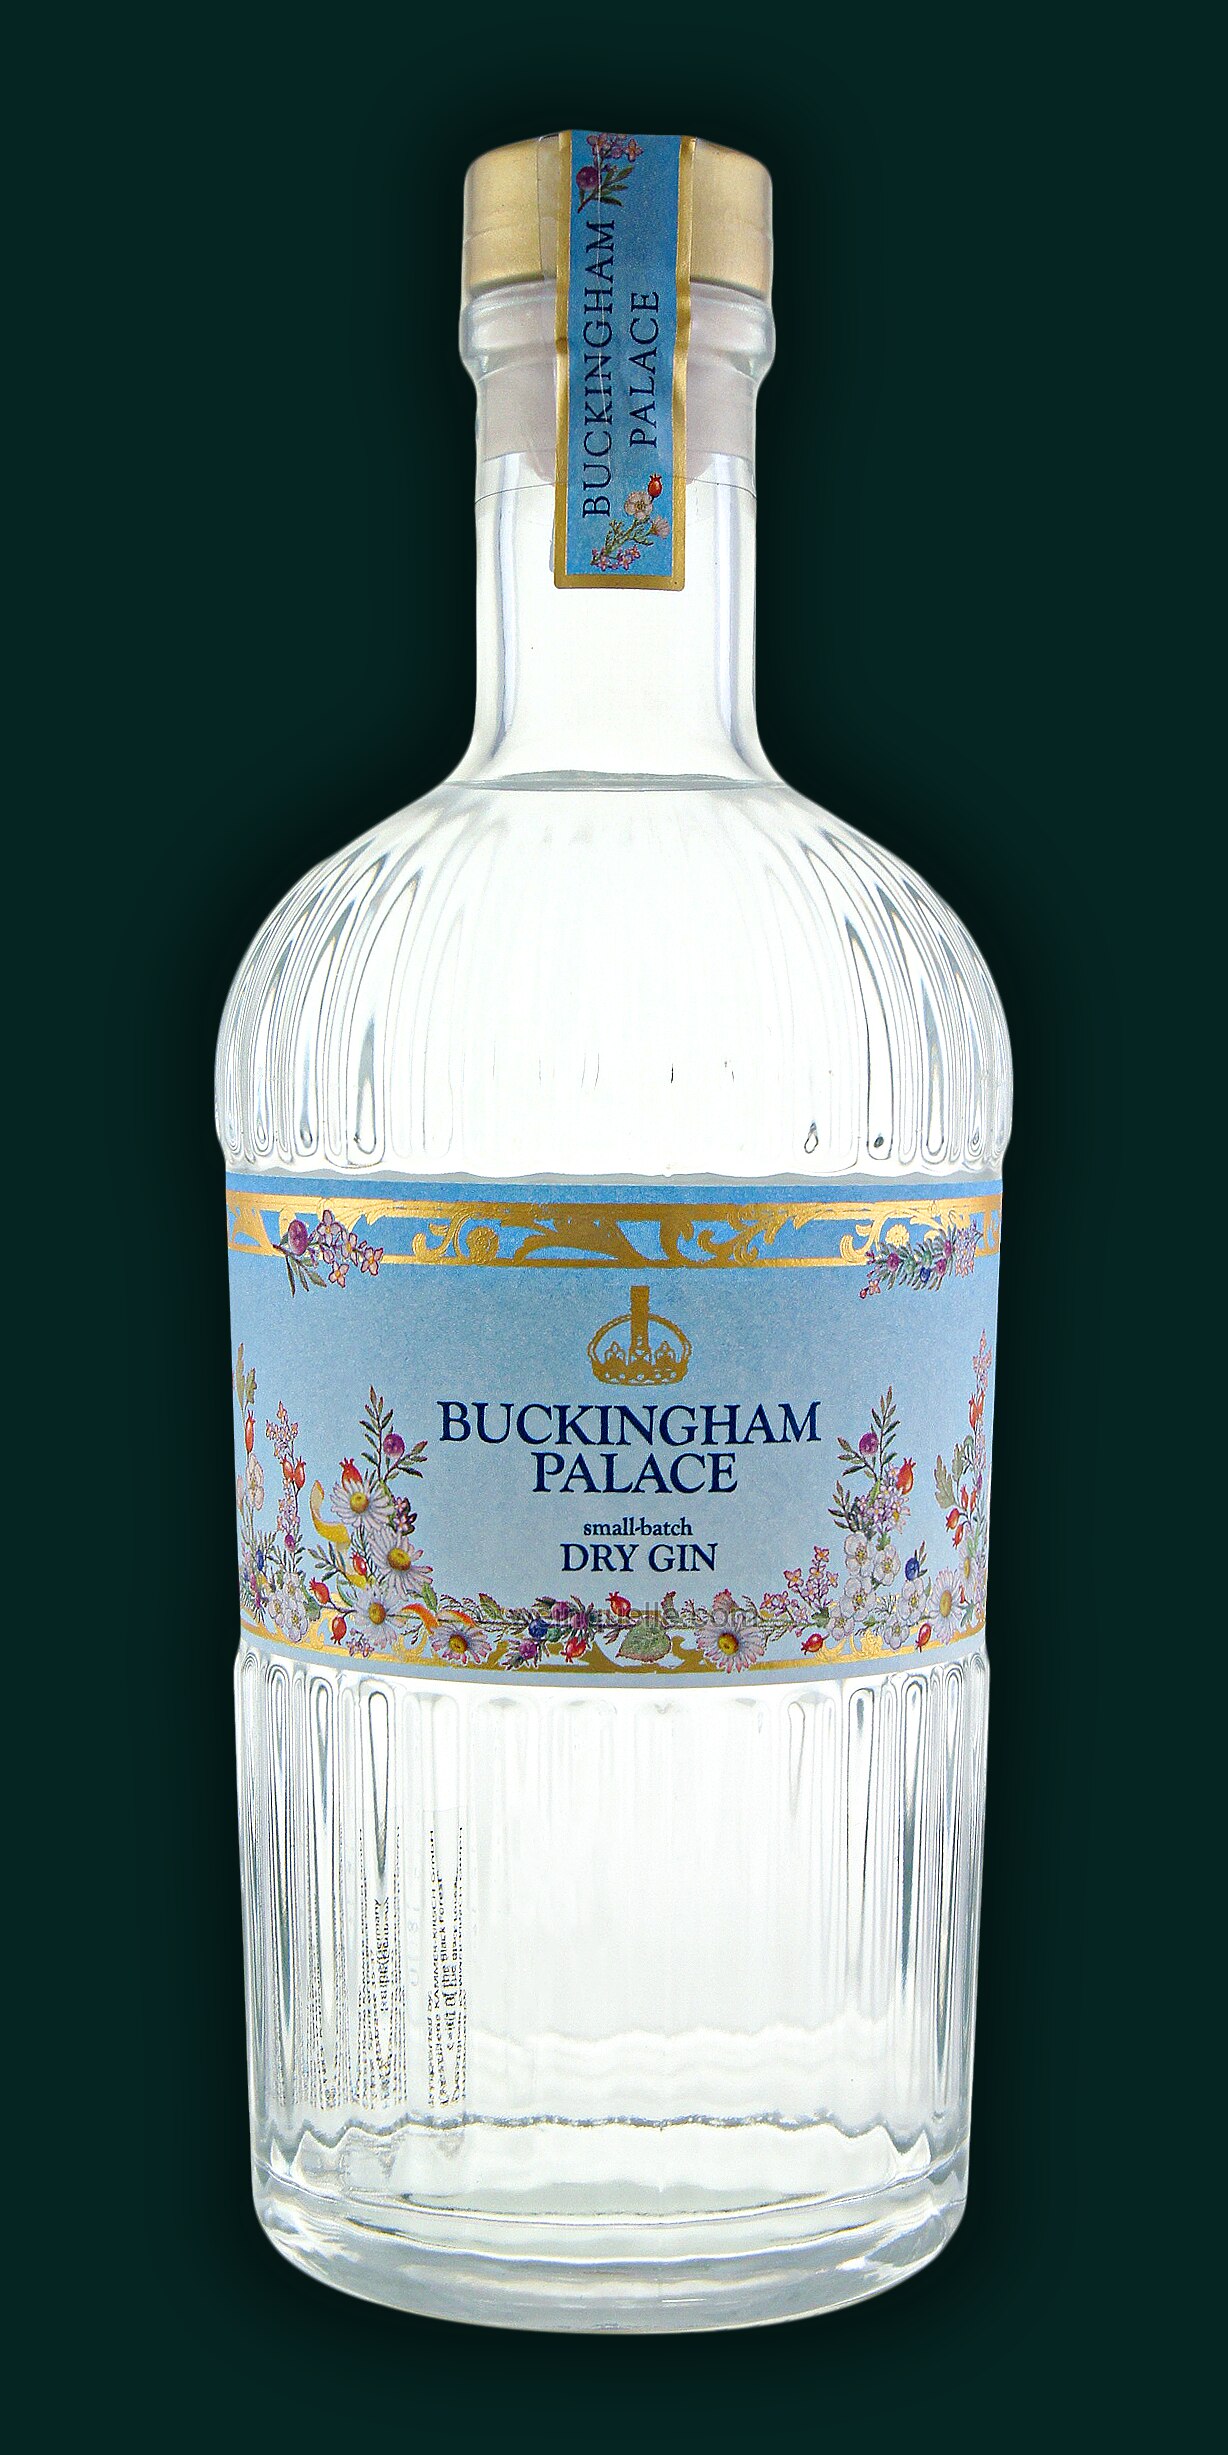 Buckingham Palace Gin 4790 € Weinquelle Lühmann 